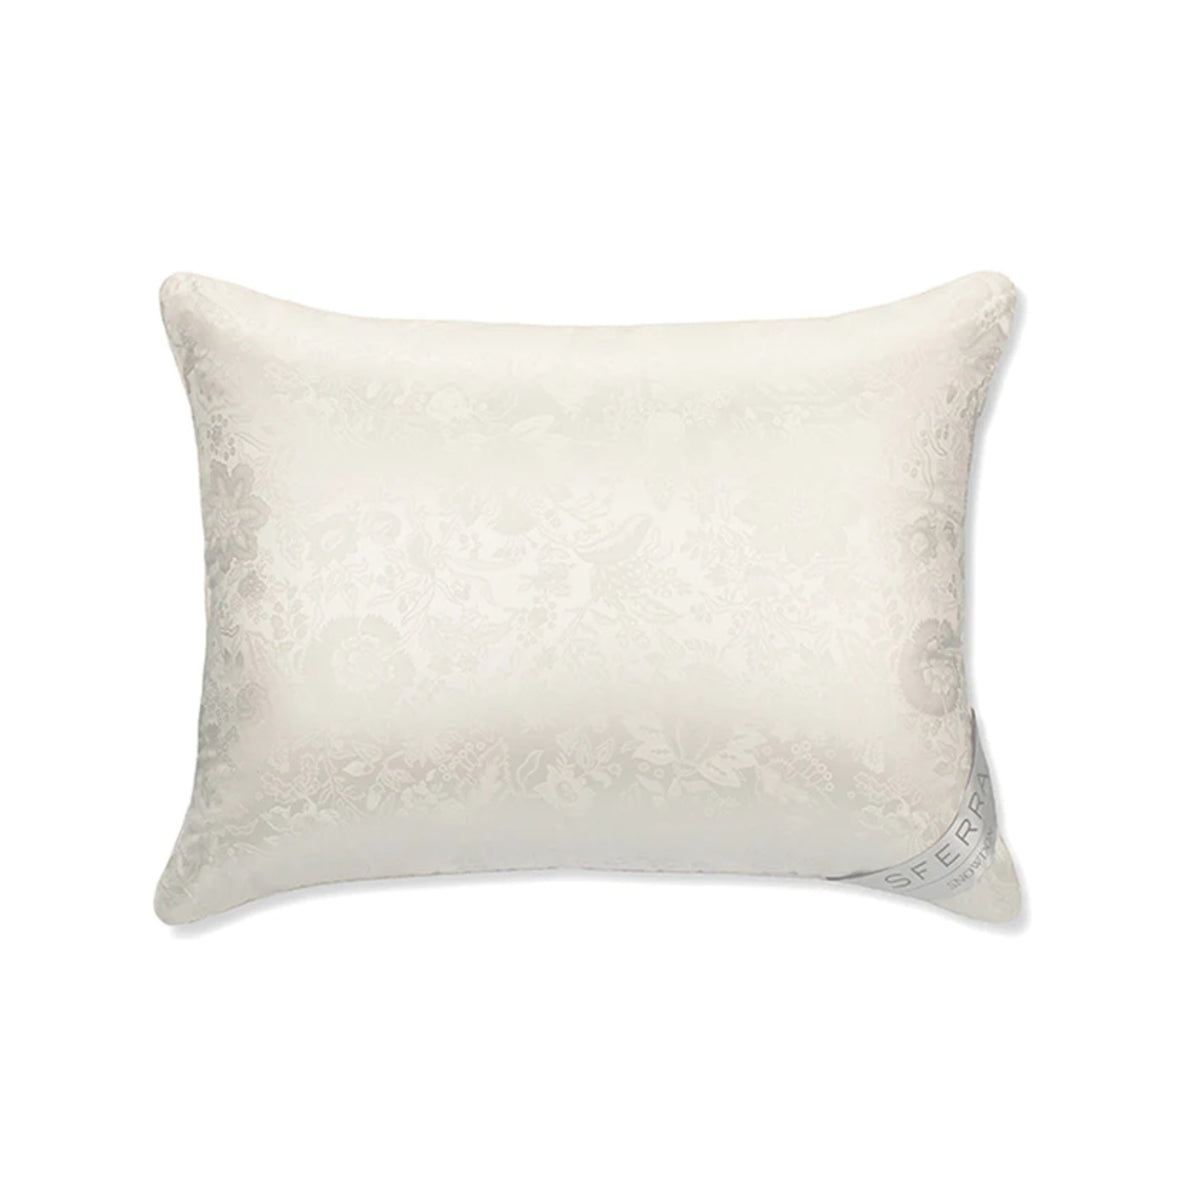 Sferra Snowdon Pillow Top Photo against white background